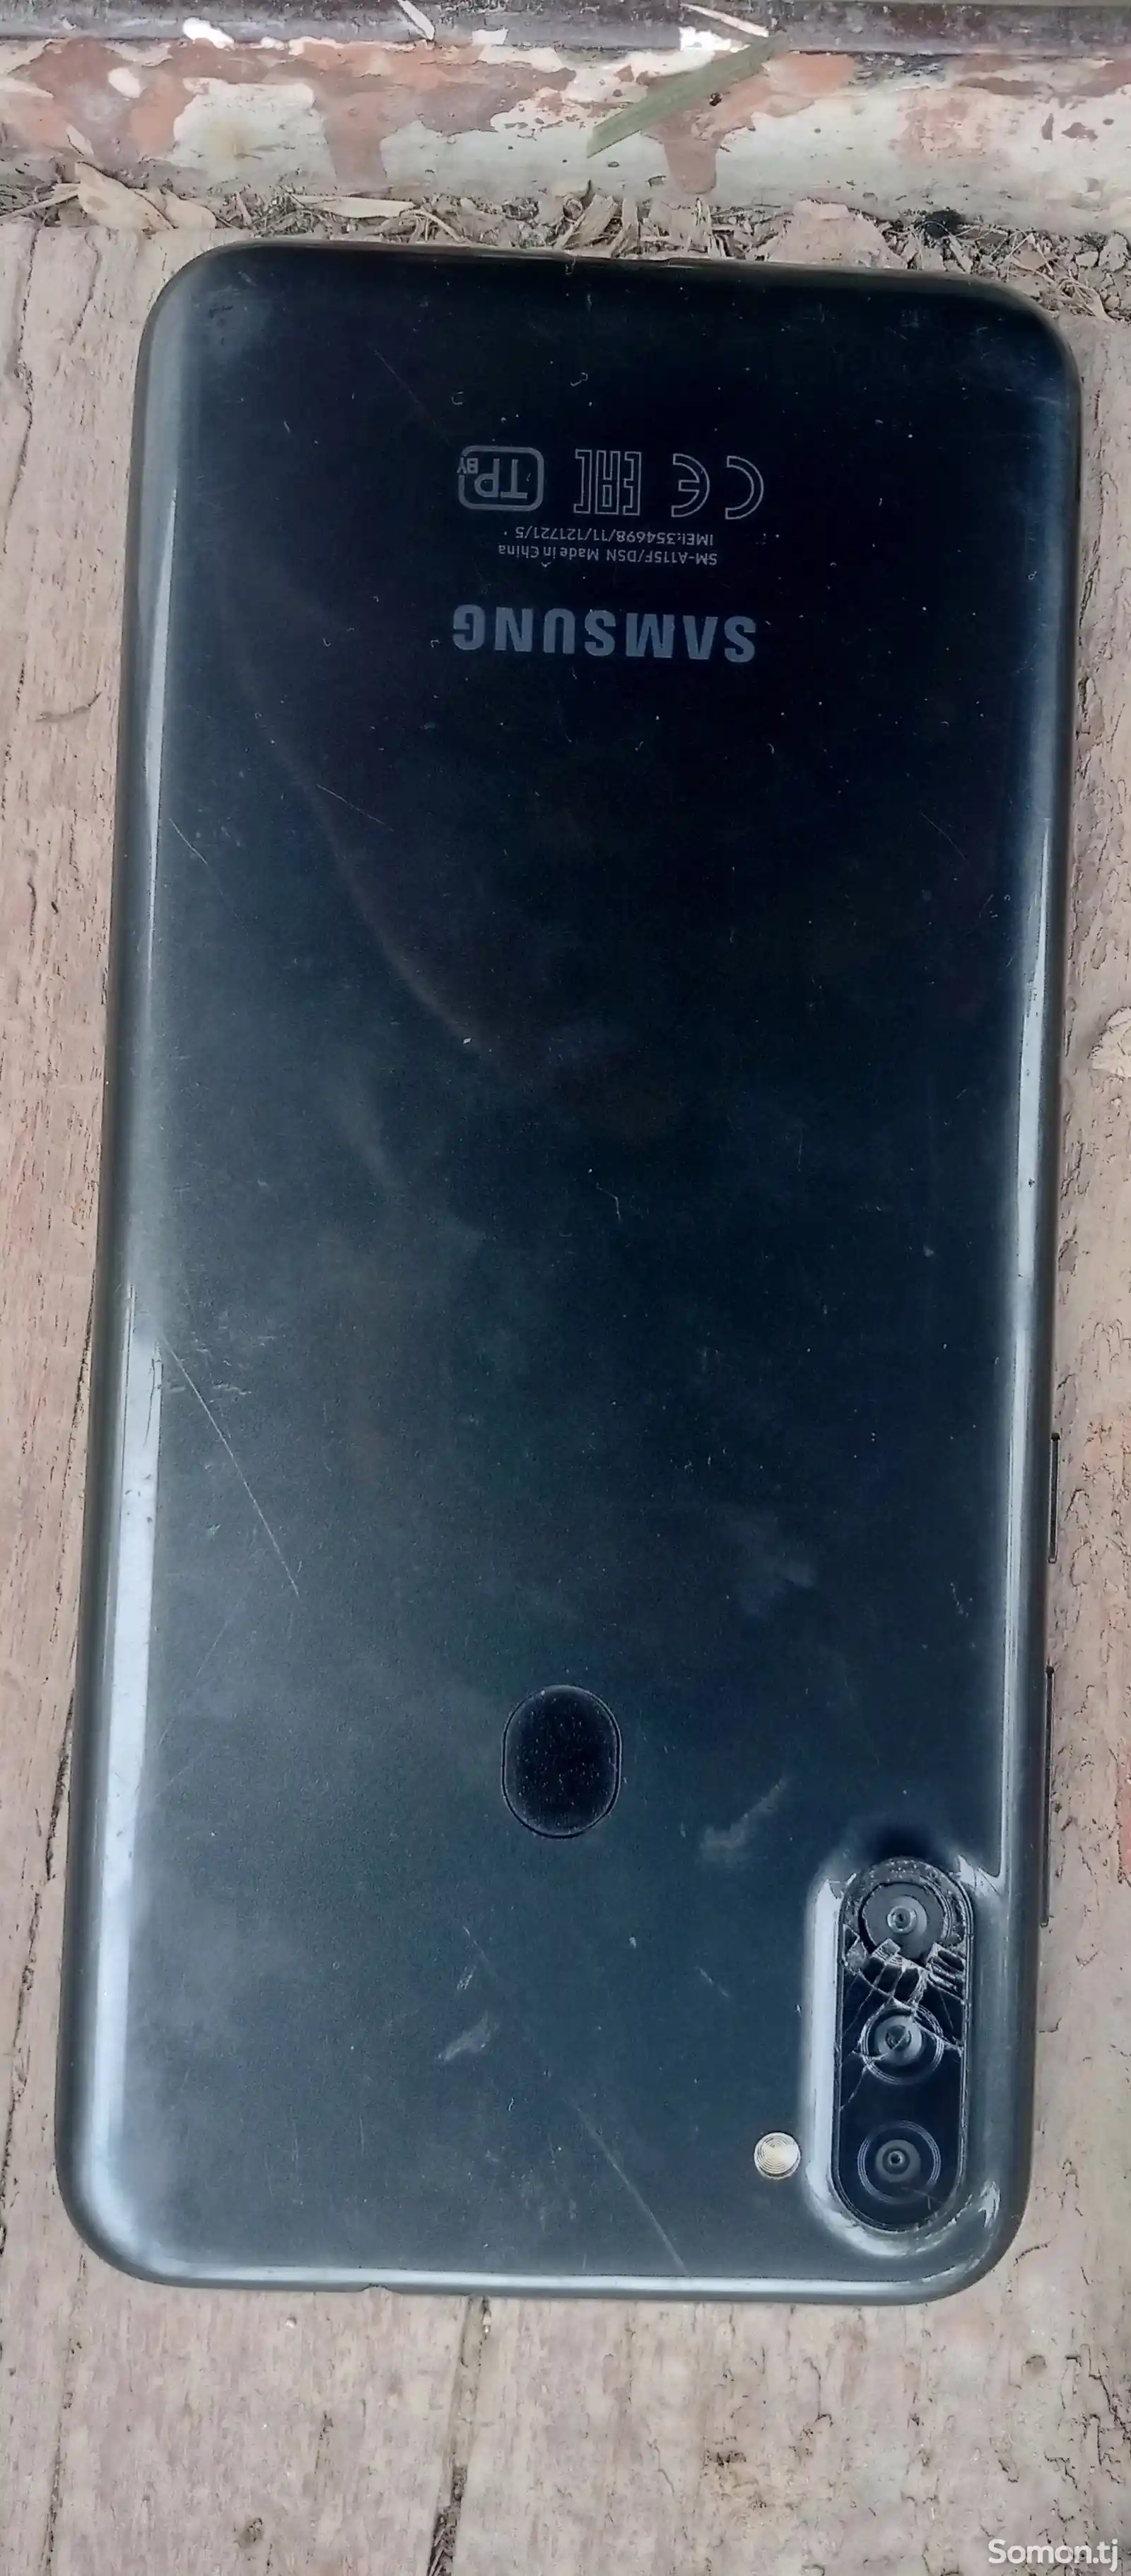 Samsung Galaxy A11-3